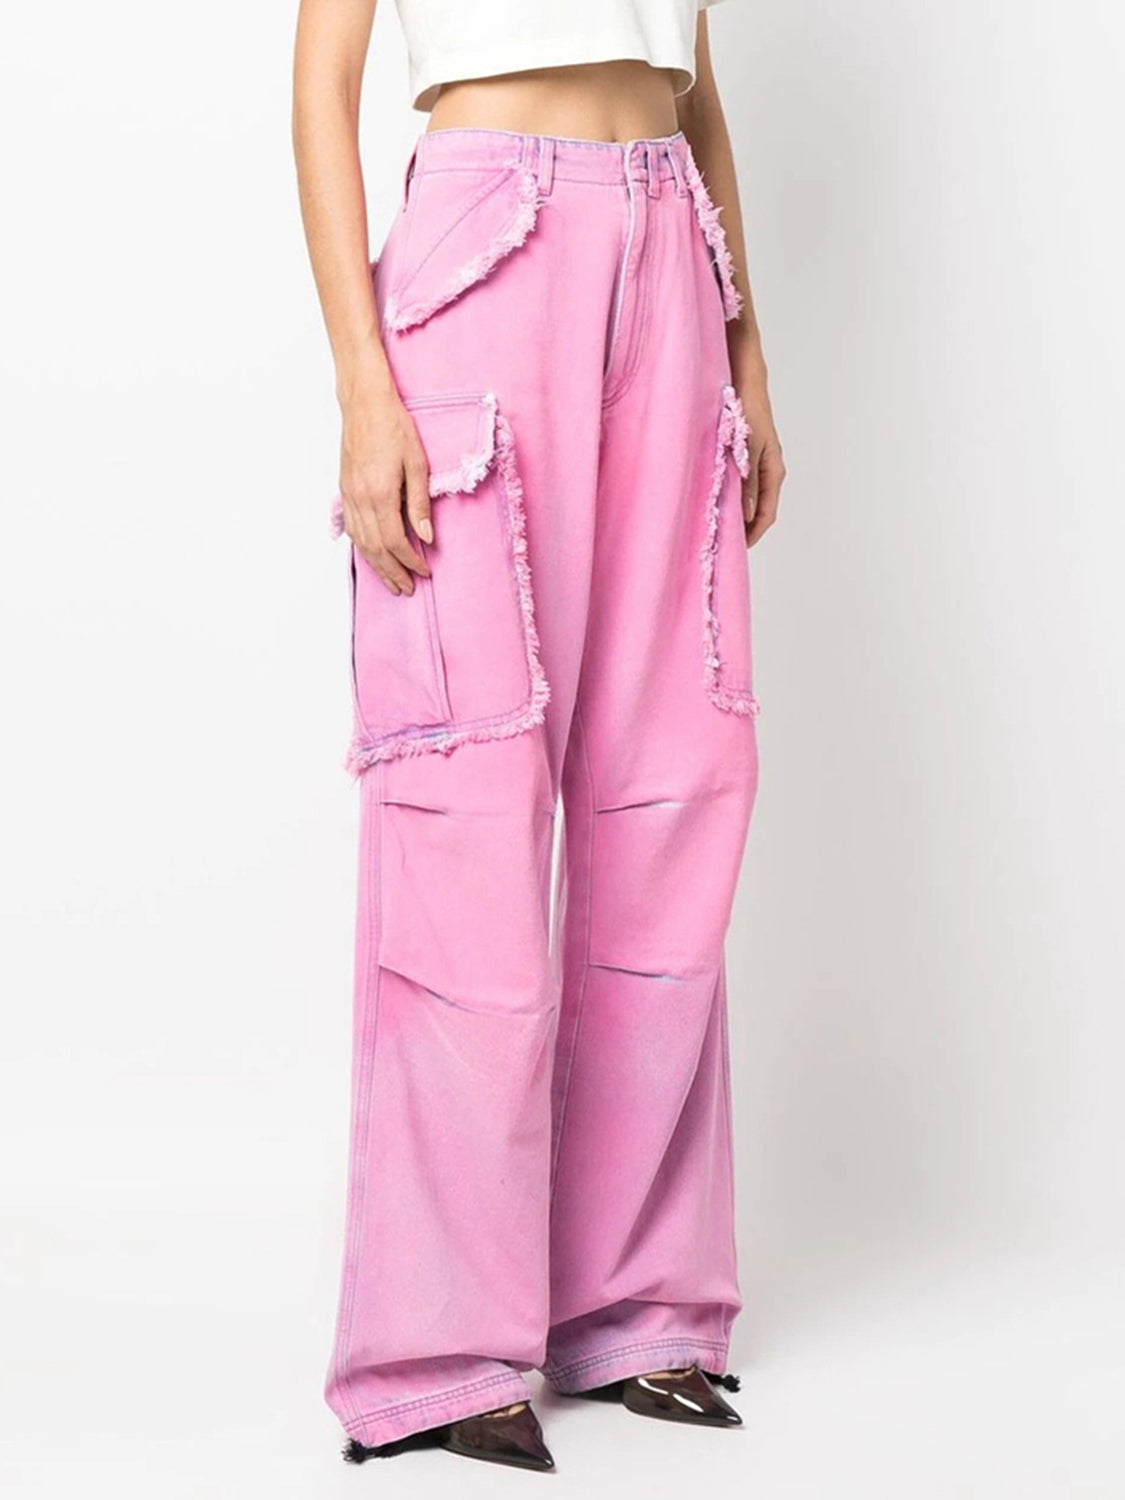 TEEK - Catharines Pink Frayed Detail Cargo Jeans JEANS TEEK Trend S  